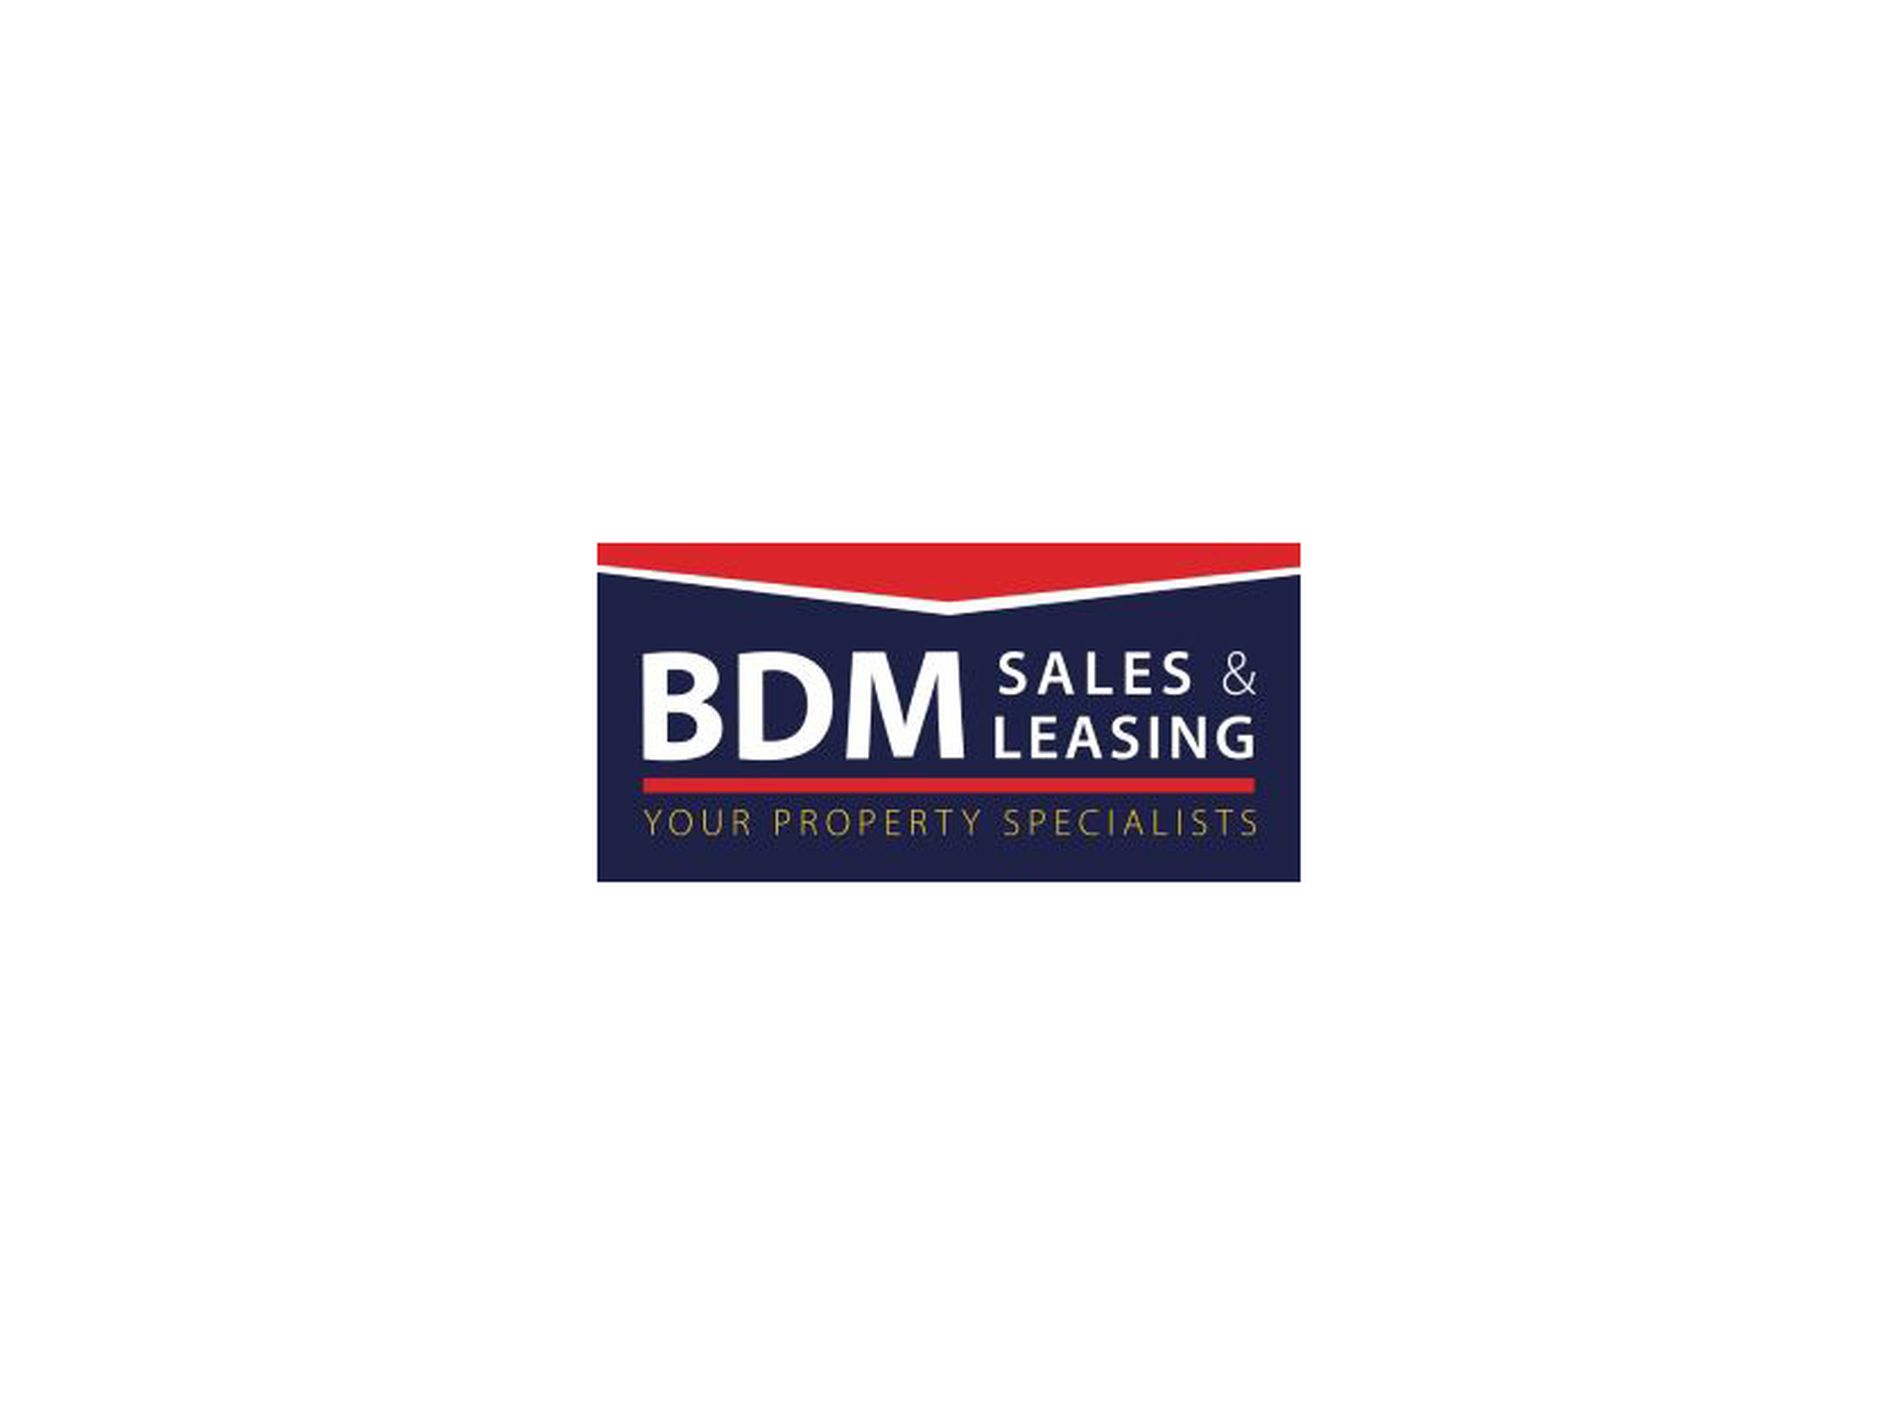 BDM Sales & Leasing